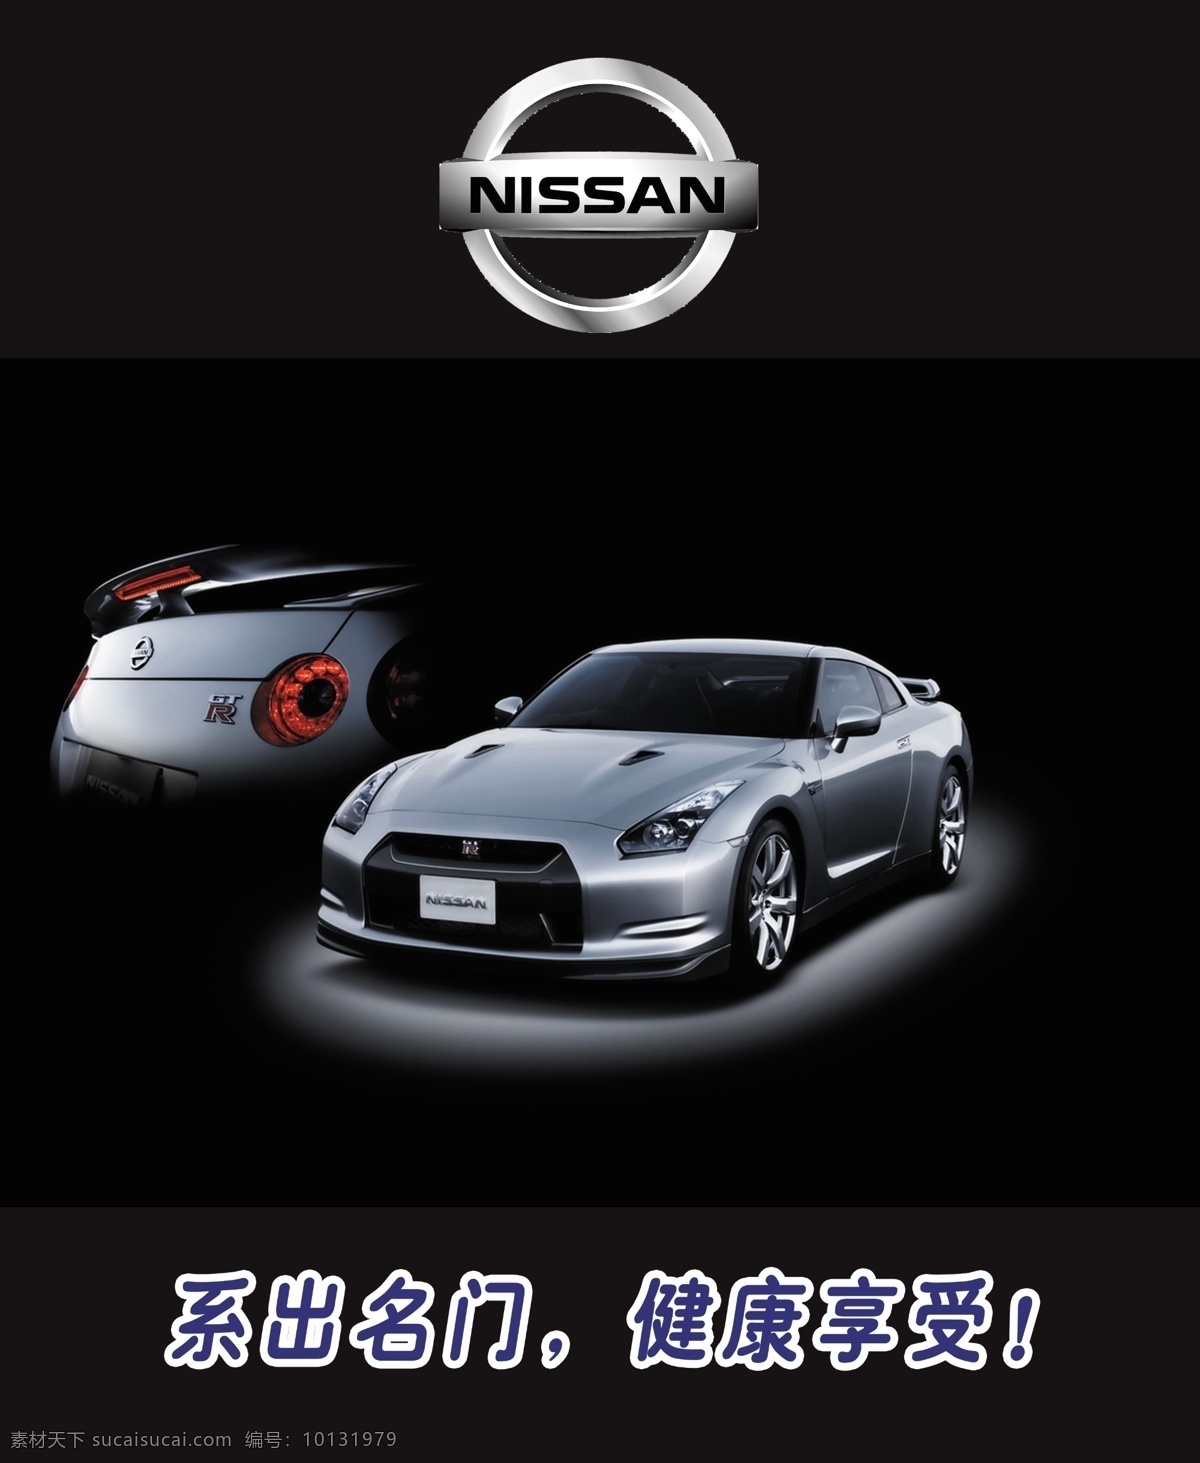 尼桑 尼桑汽车 汽车广告 logo 高清汽车 招贴设计